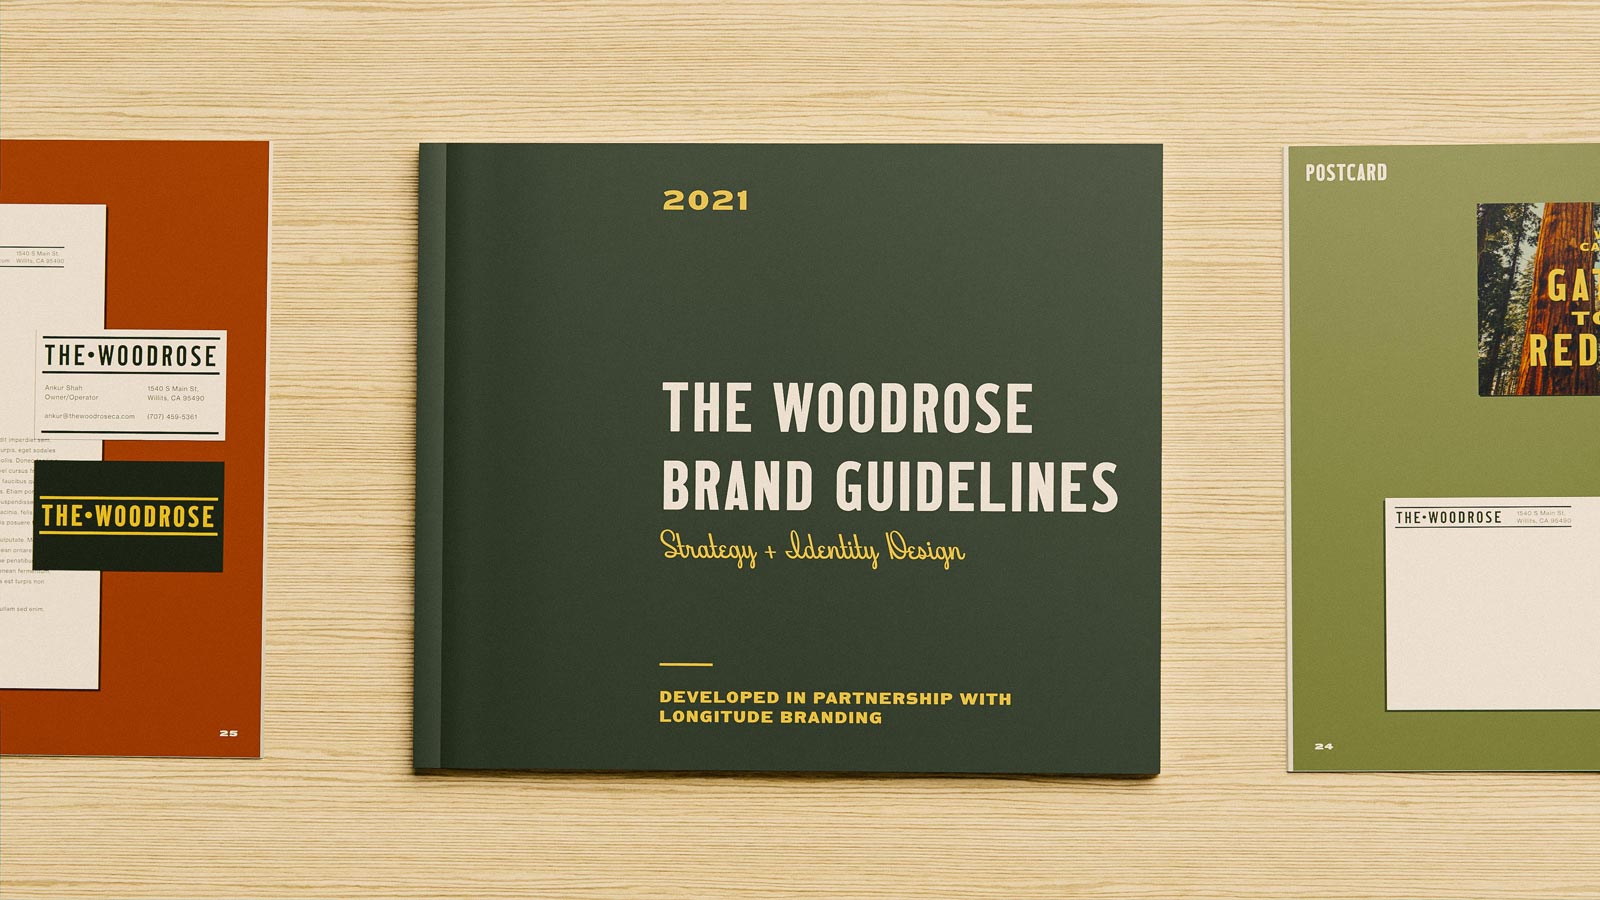 Motel branding guidelines books